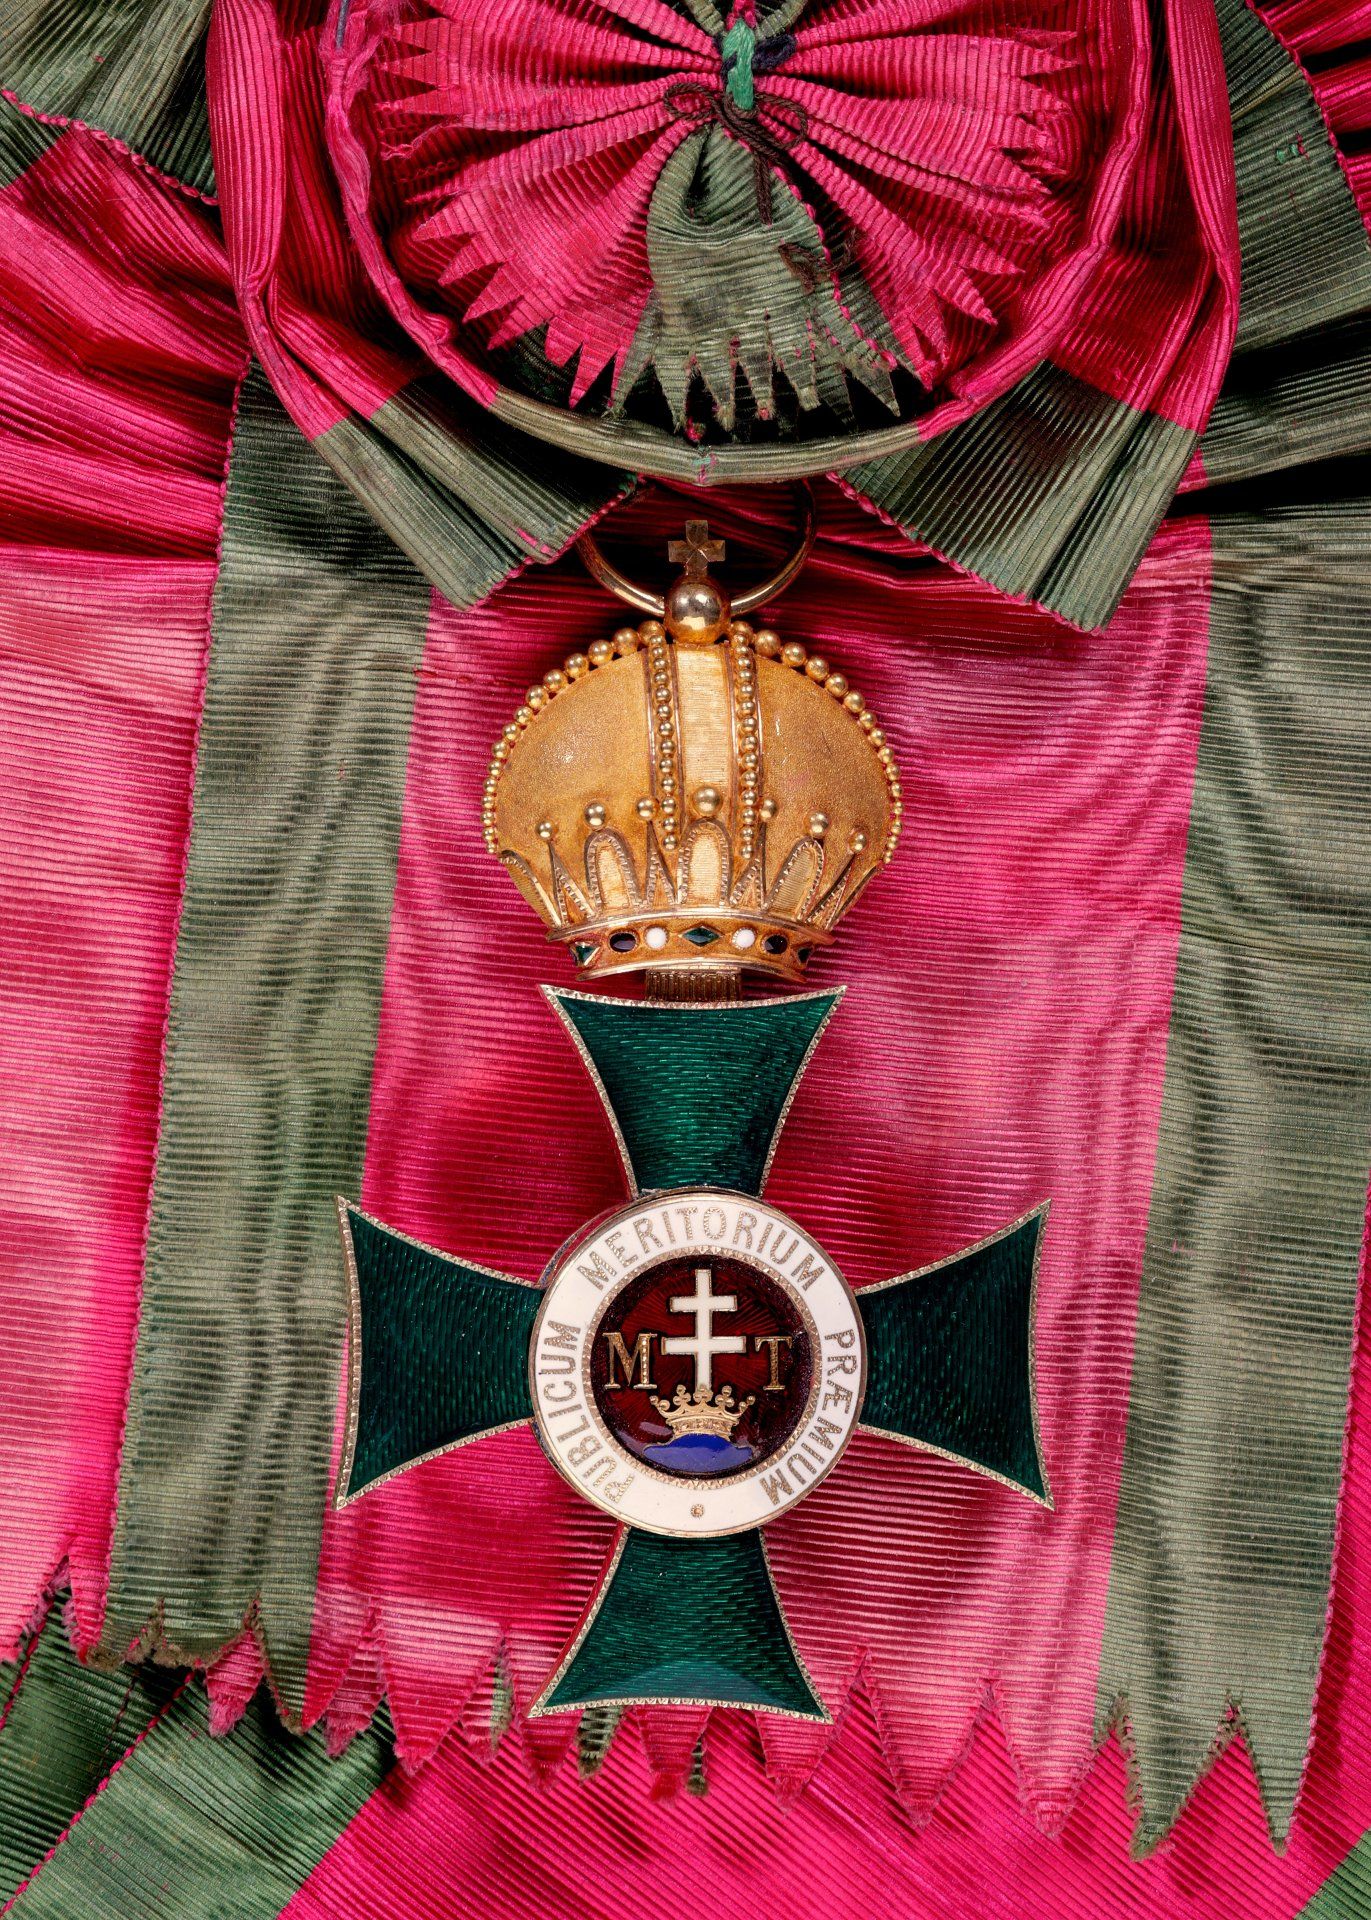 Schwarzburg Rudolstadt : Fürstlich Schwarzburgisches Ehrenkreuz: Ehrenkreuz 1. Klasse mit Krone,... - Bild 15 aus 23